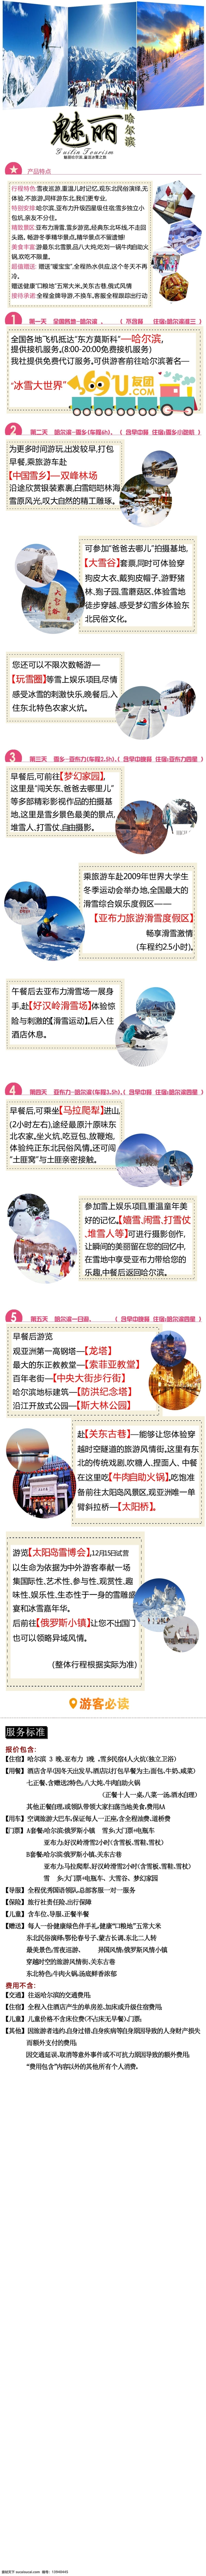 魅力 哈尔滨 东北 游行 程 旅游海报 行程 微信 雪乡 亚布力 游客必读 白色